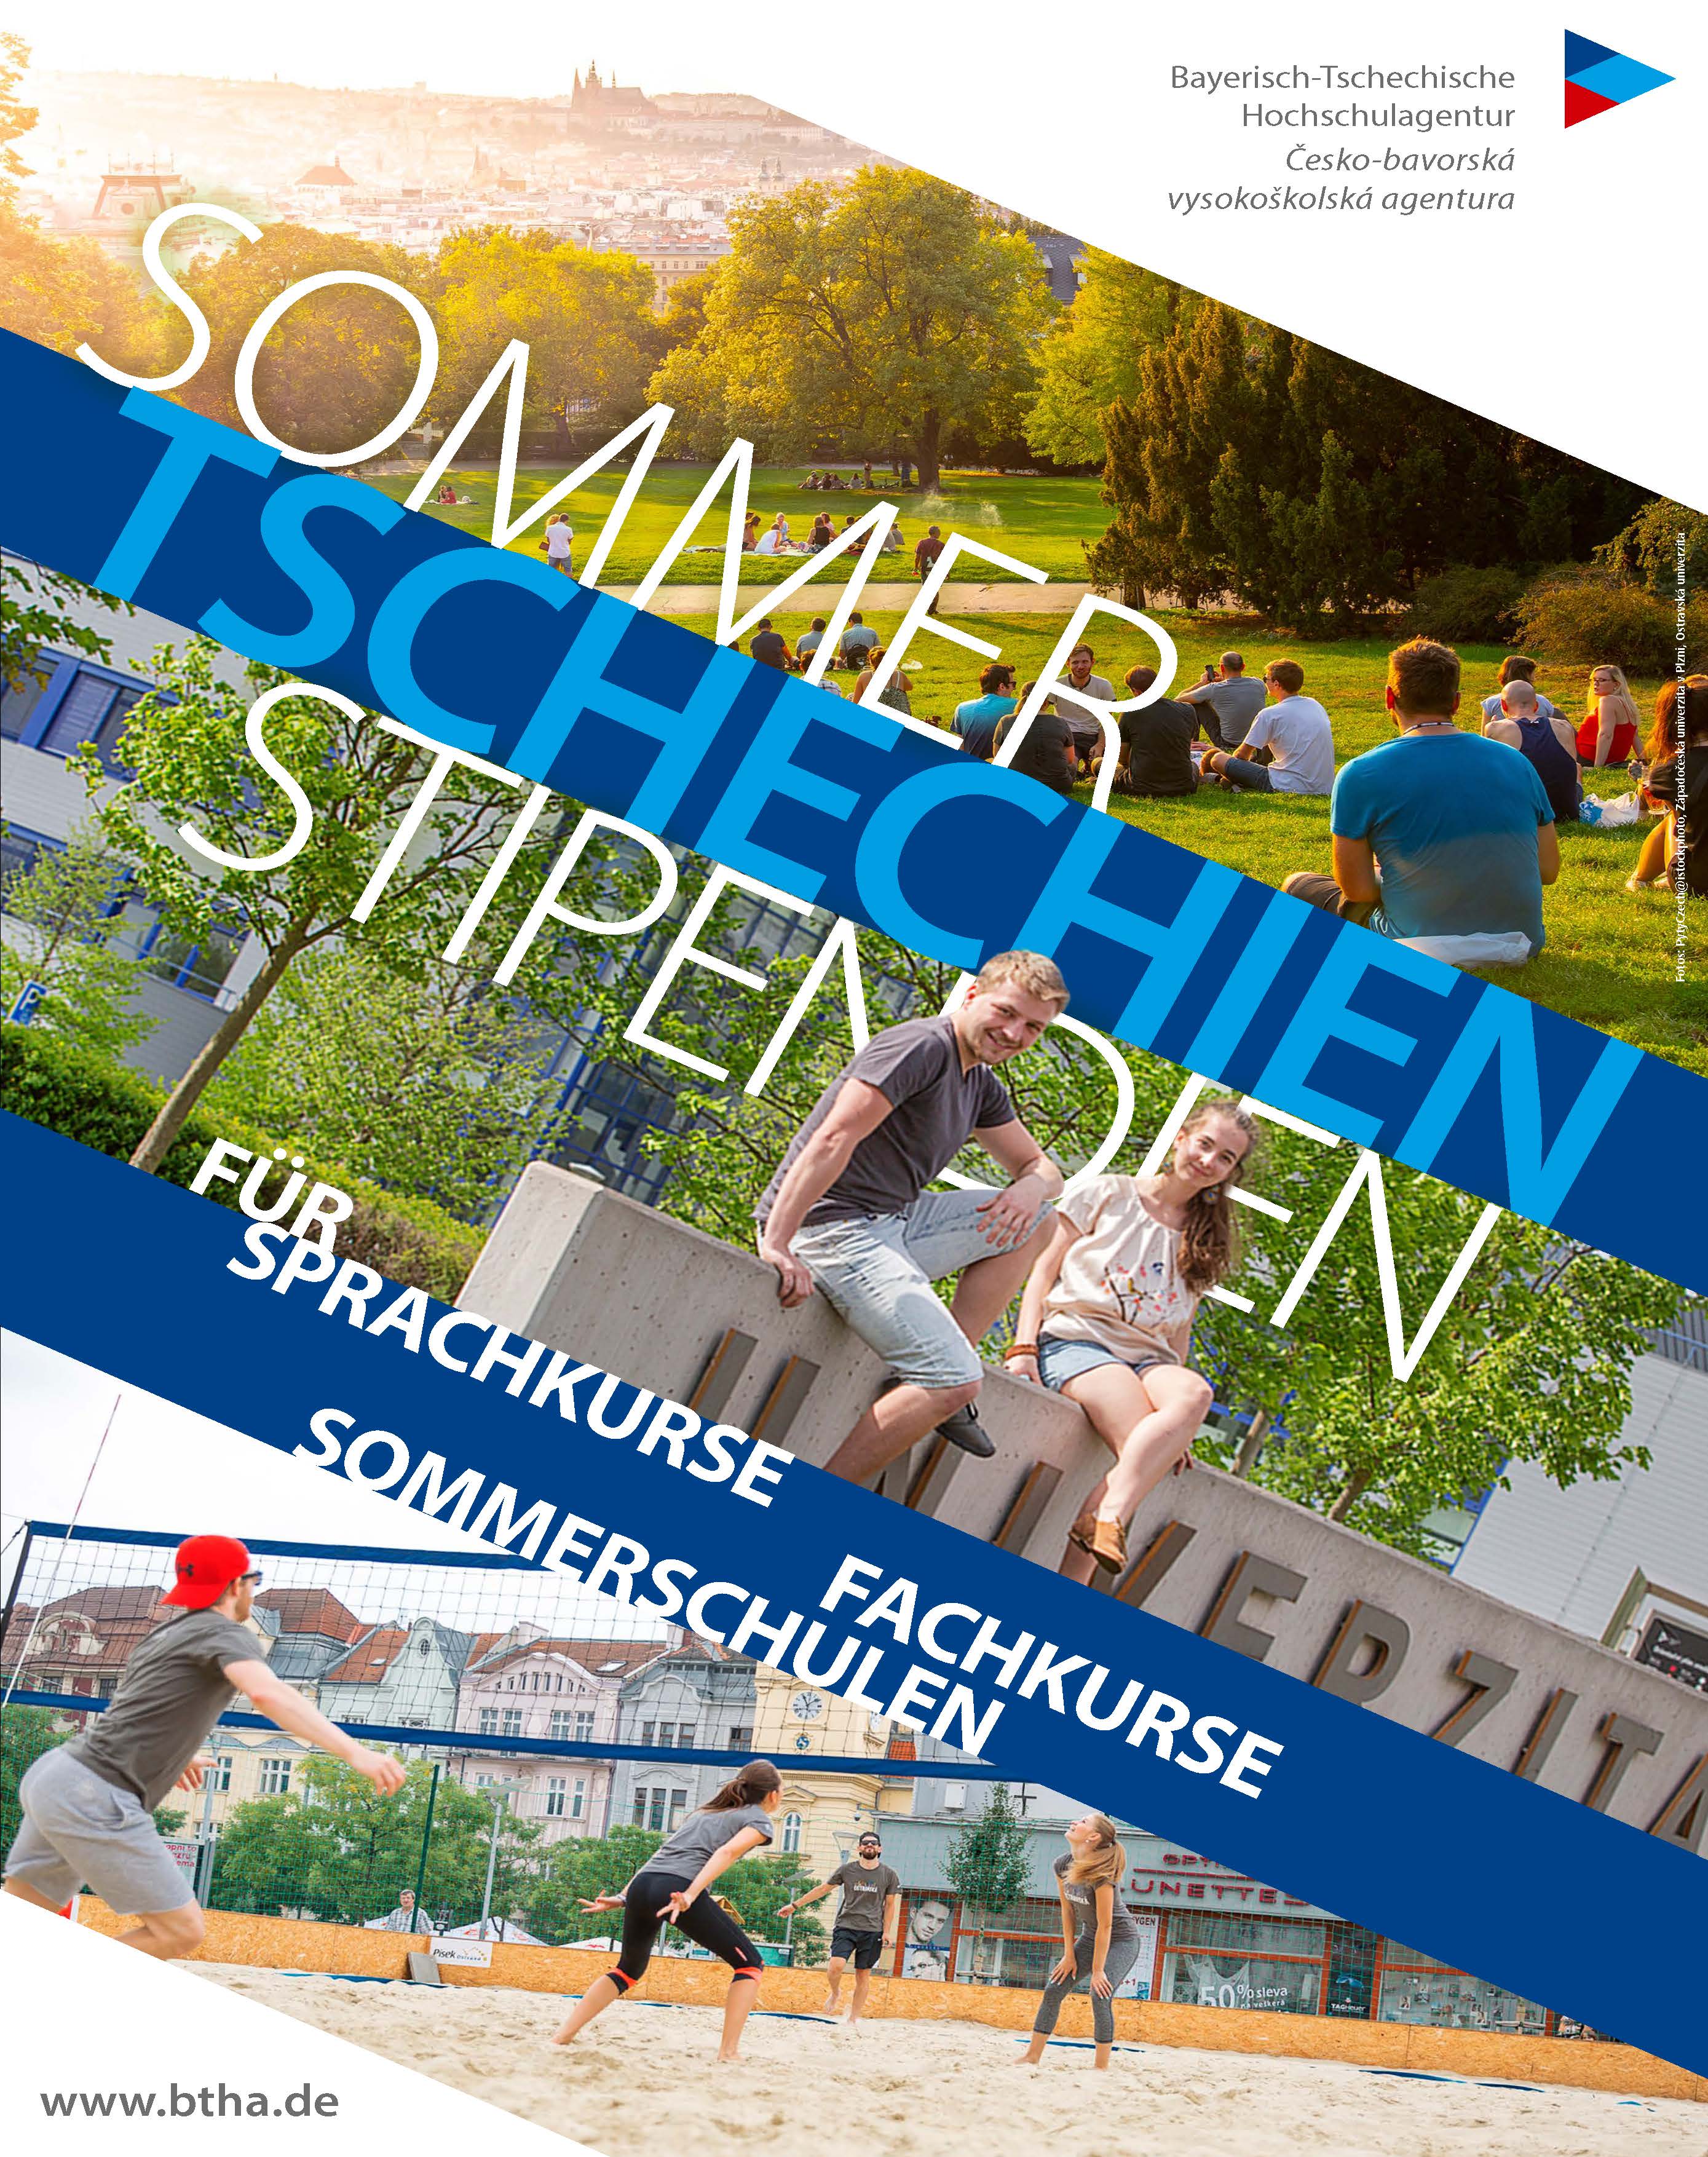 BTHA Plakat Sommerschulen Tschechien